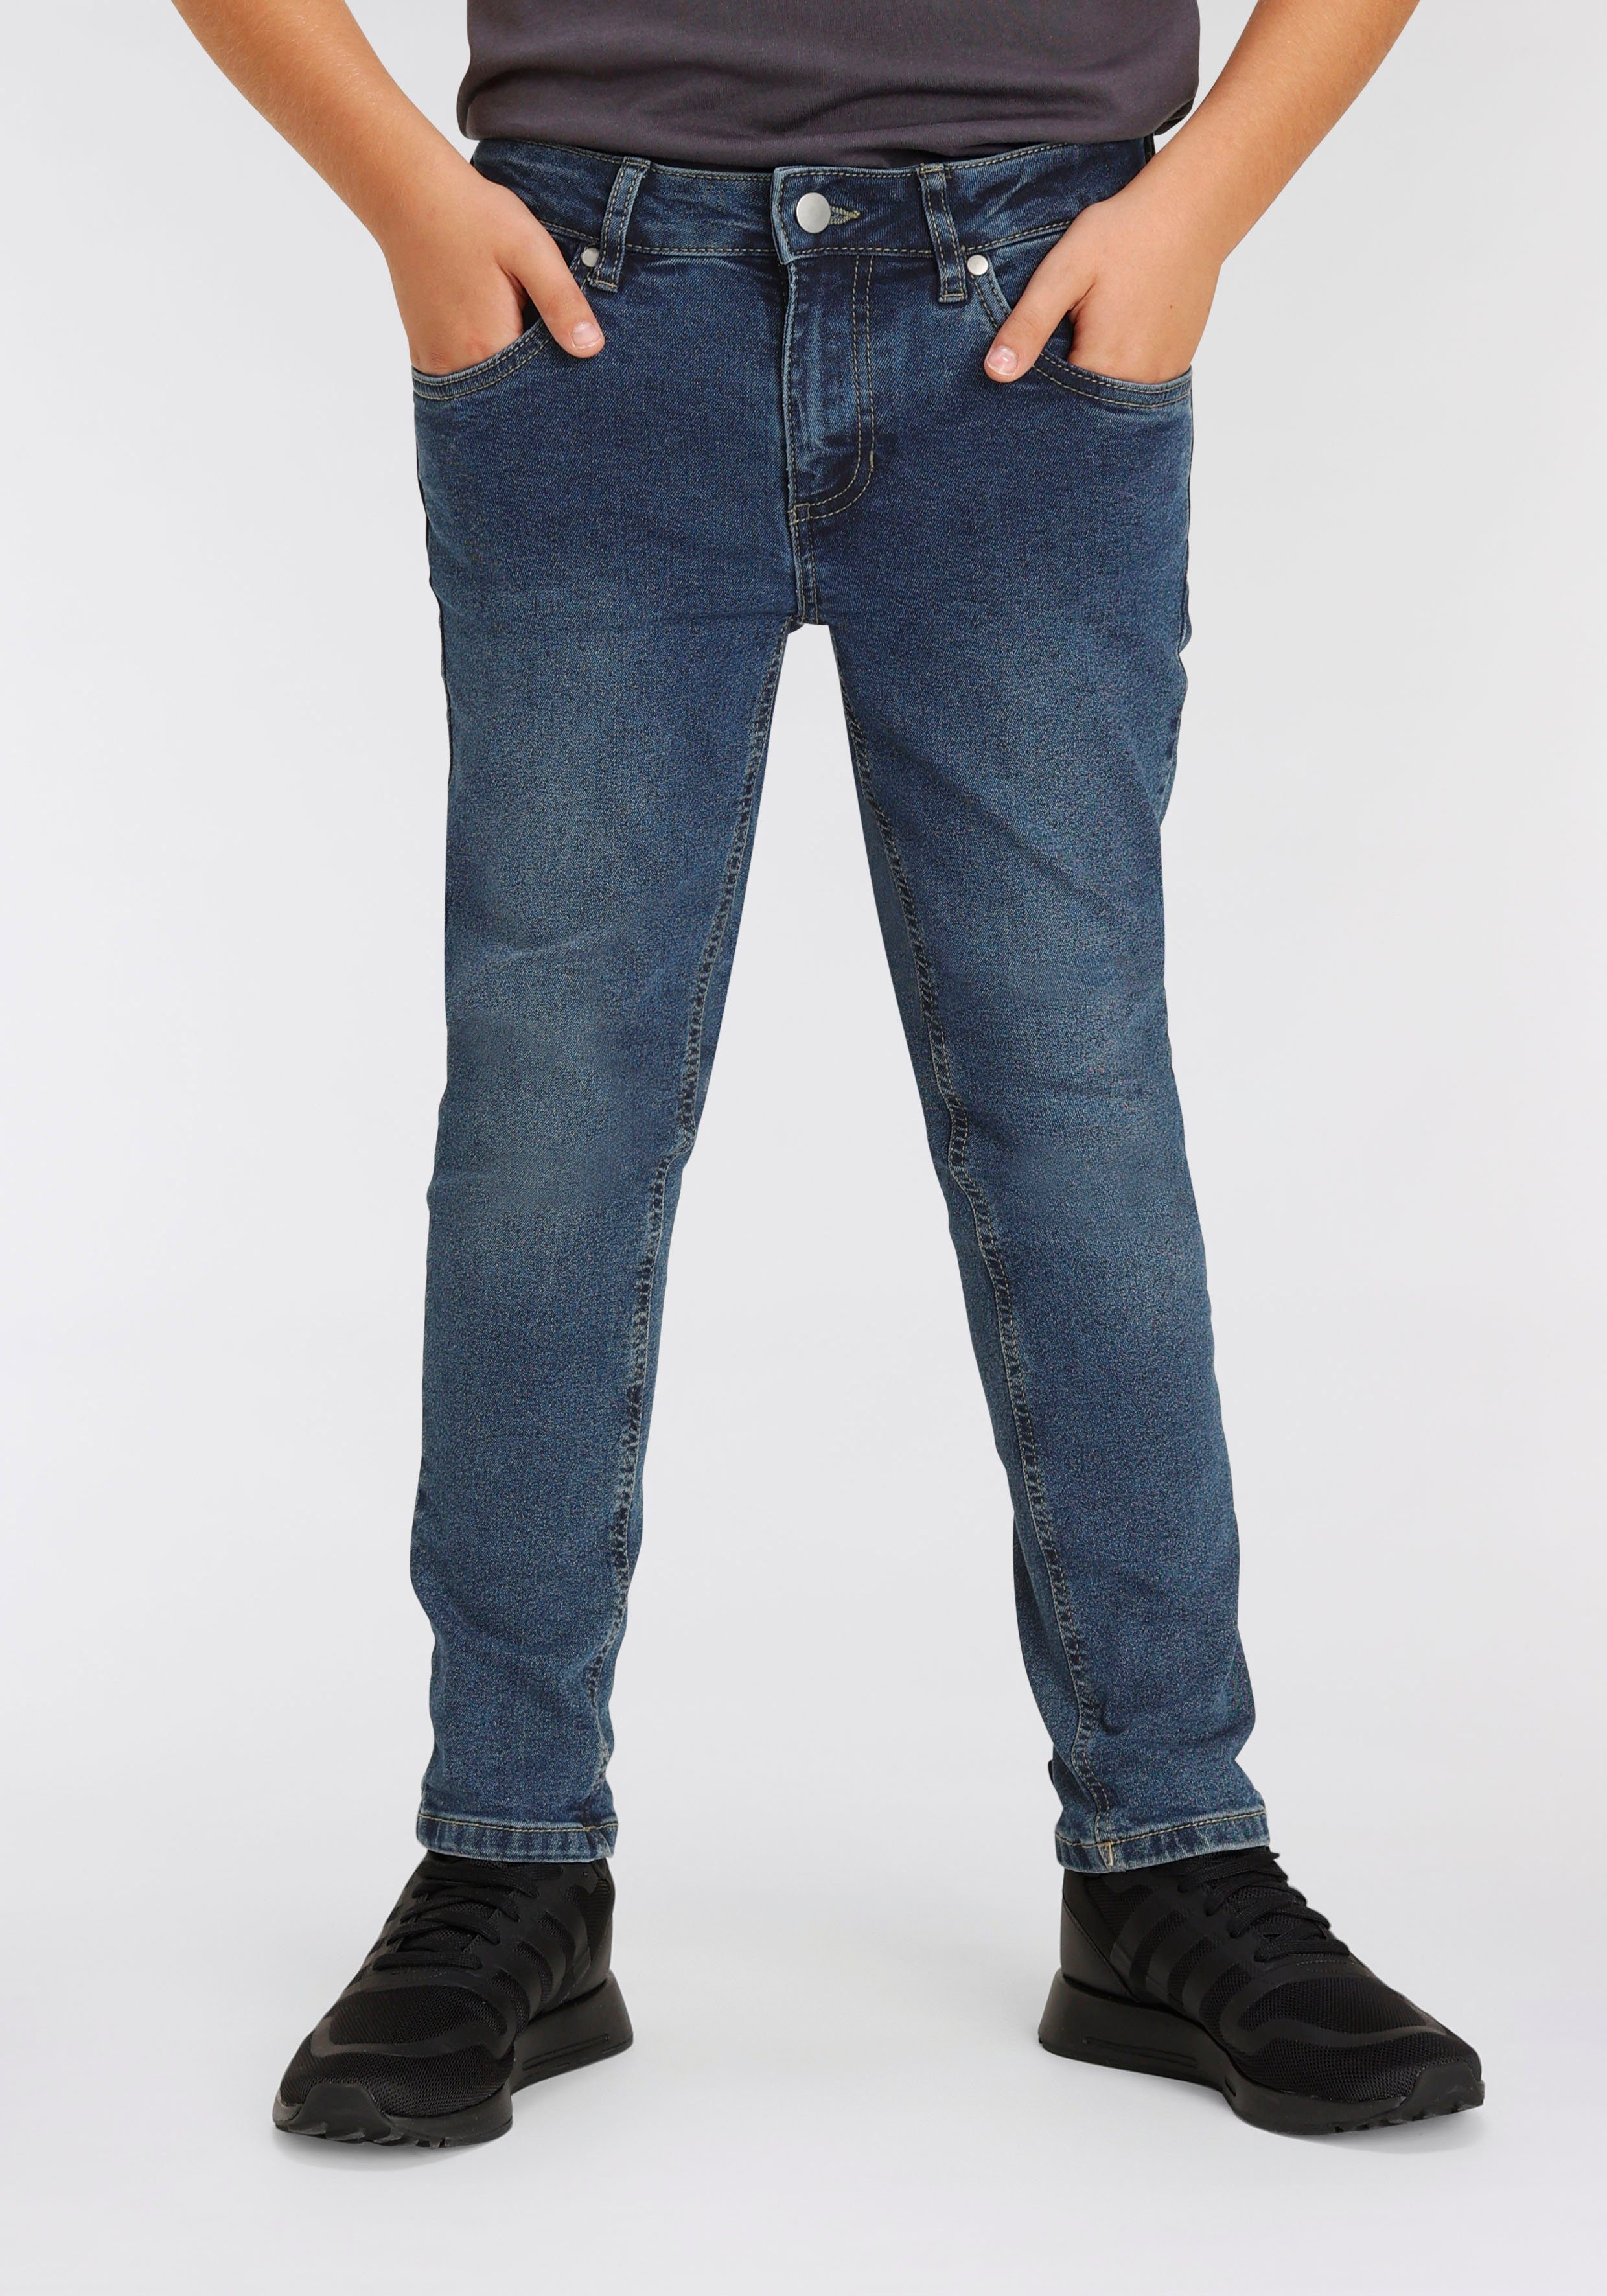 [Große Veröffentlichung zum supergünstigen Preis!] KIDSWORLD Stretch-Jeans mit schmalem Bein